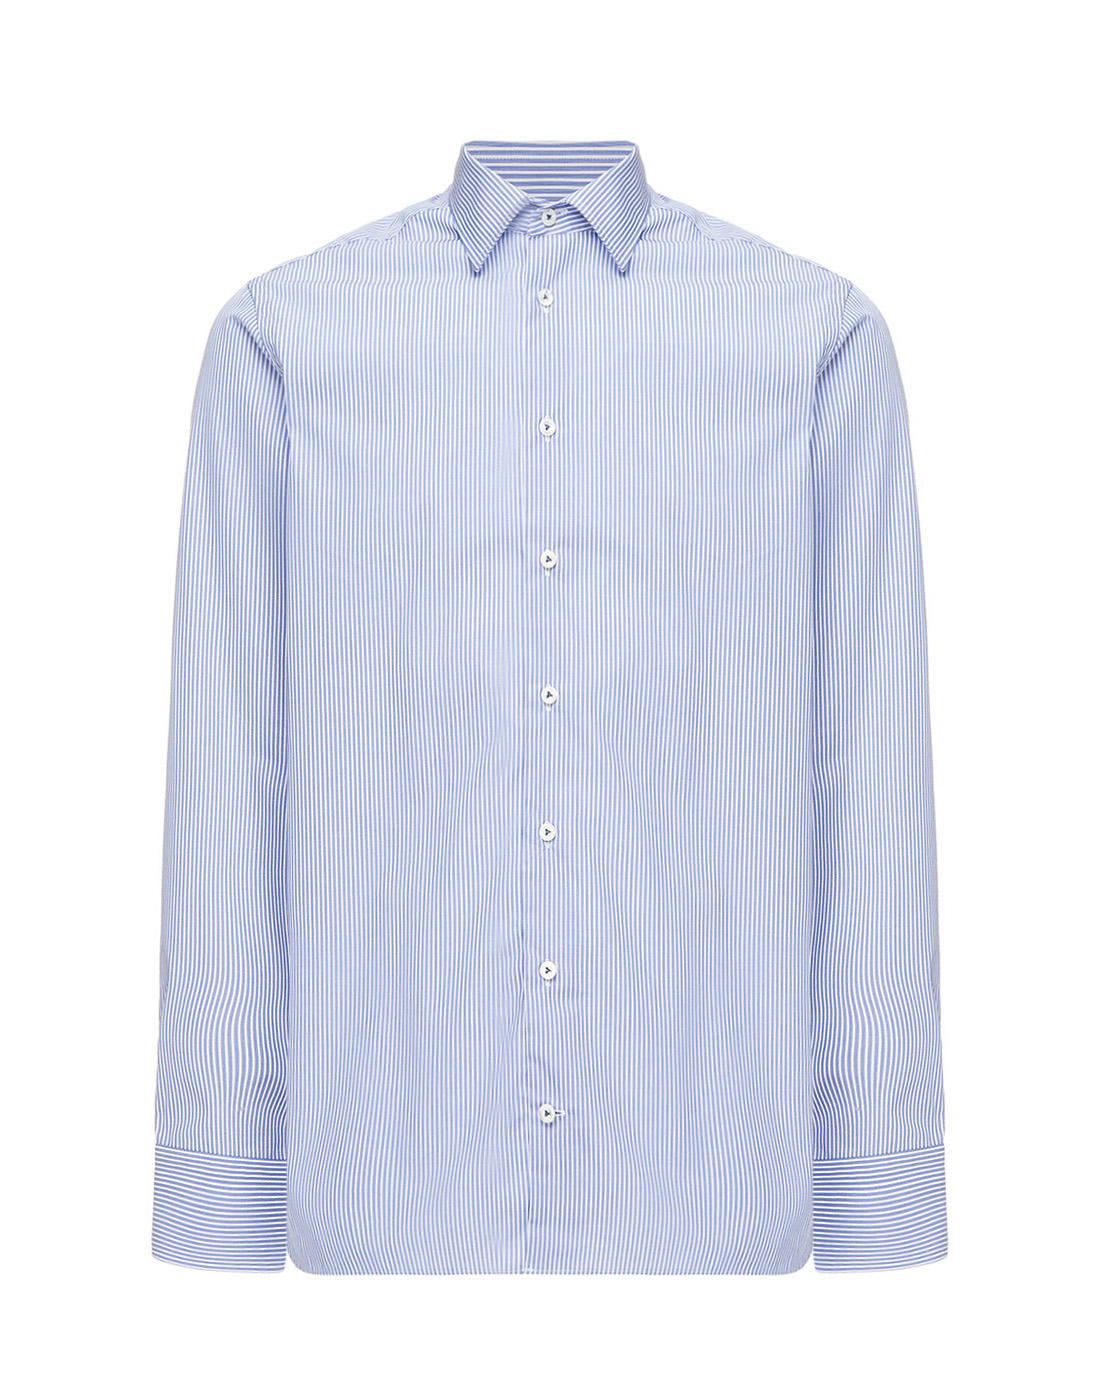 Мужская голубая рубашка в полоску Van Laack S151575/780-1